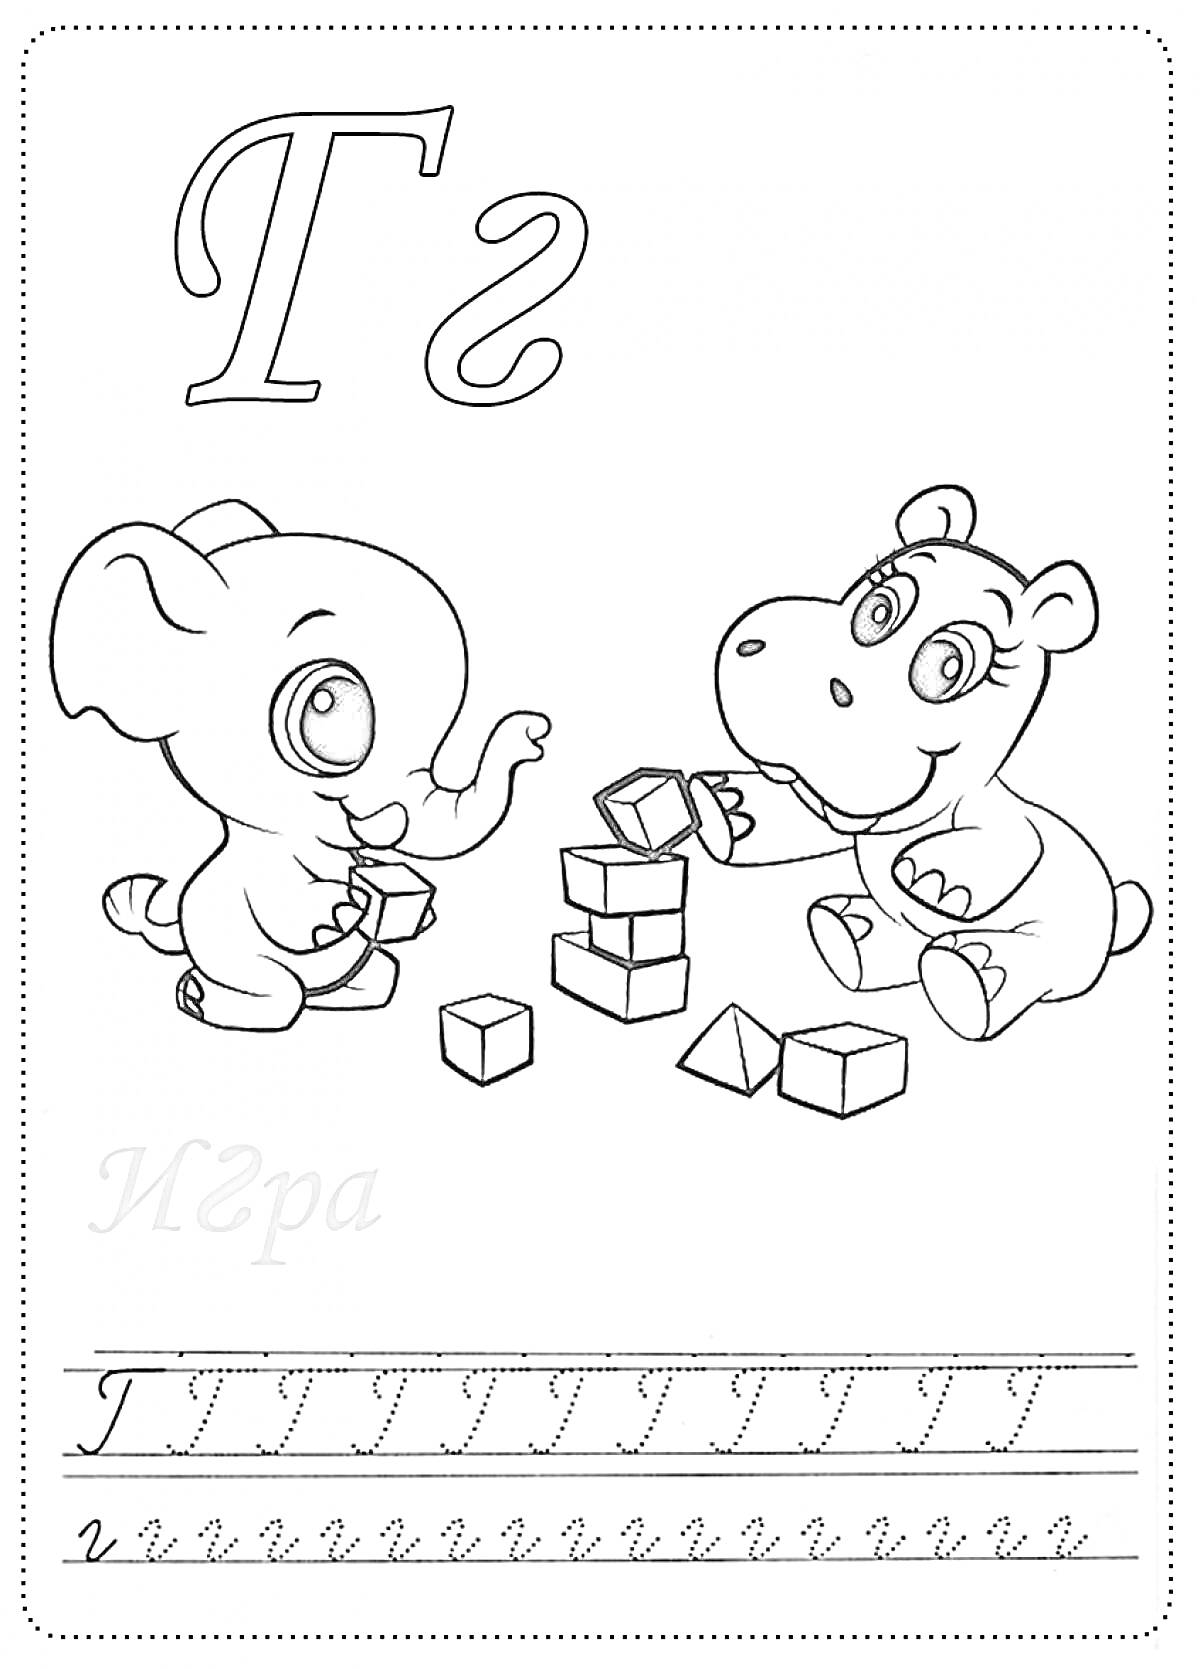 Раскраска Буква Г, играющие слоник и бегемотик с кубиками, прописи